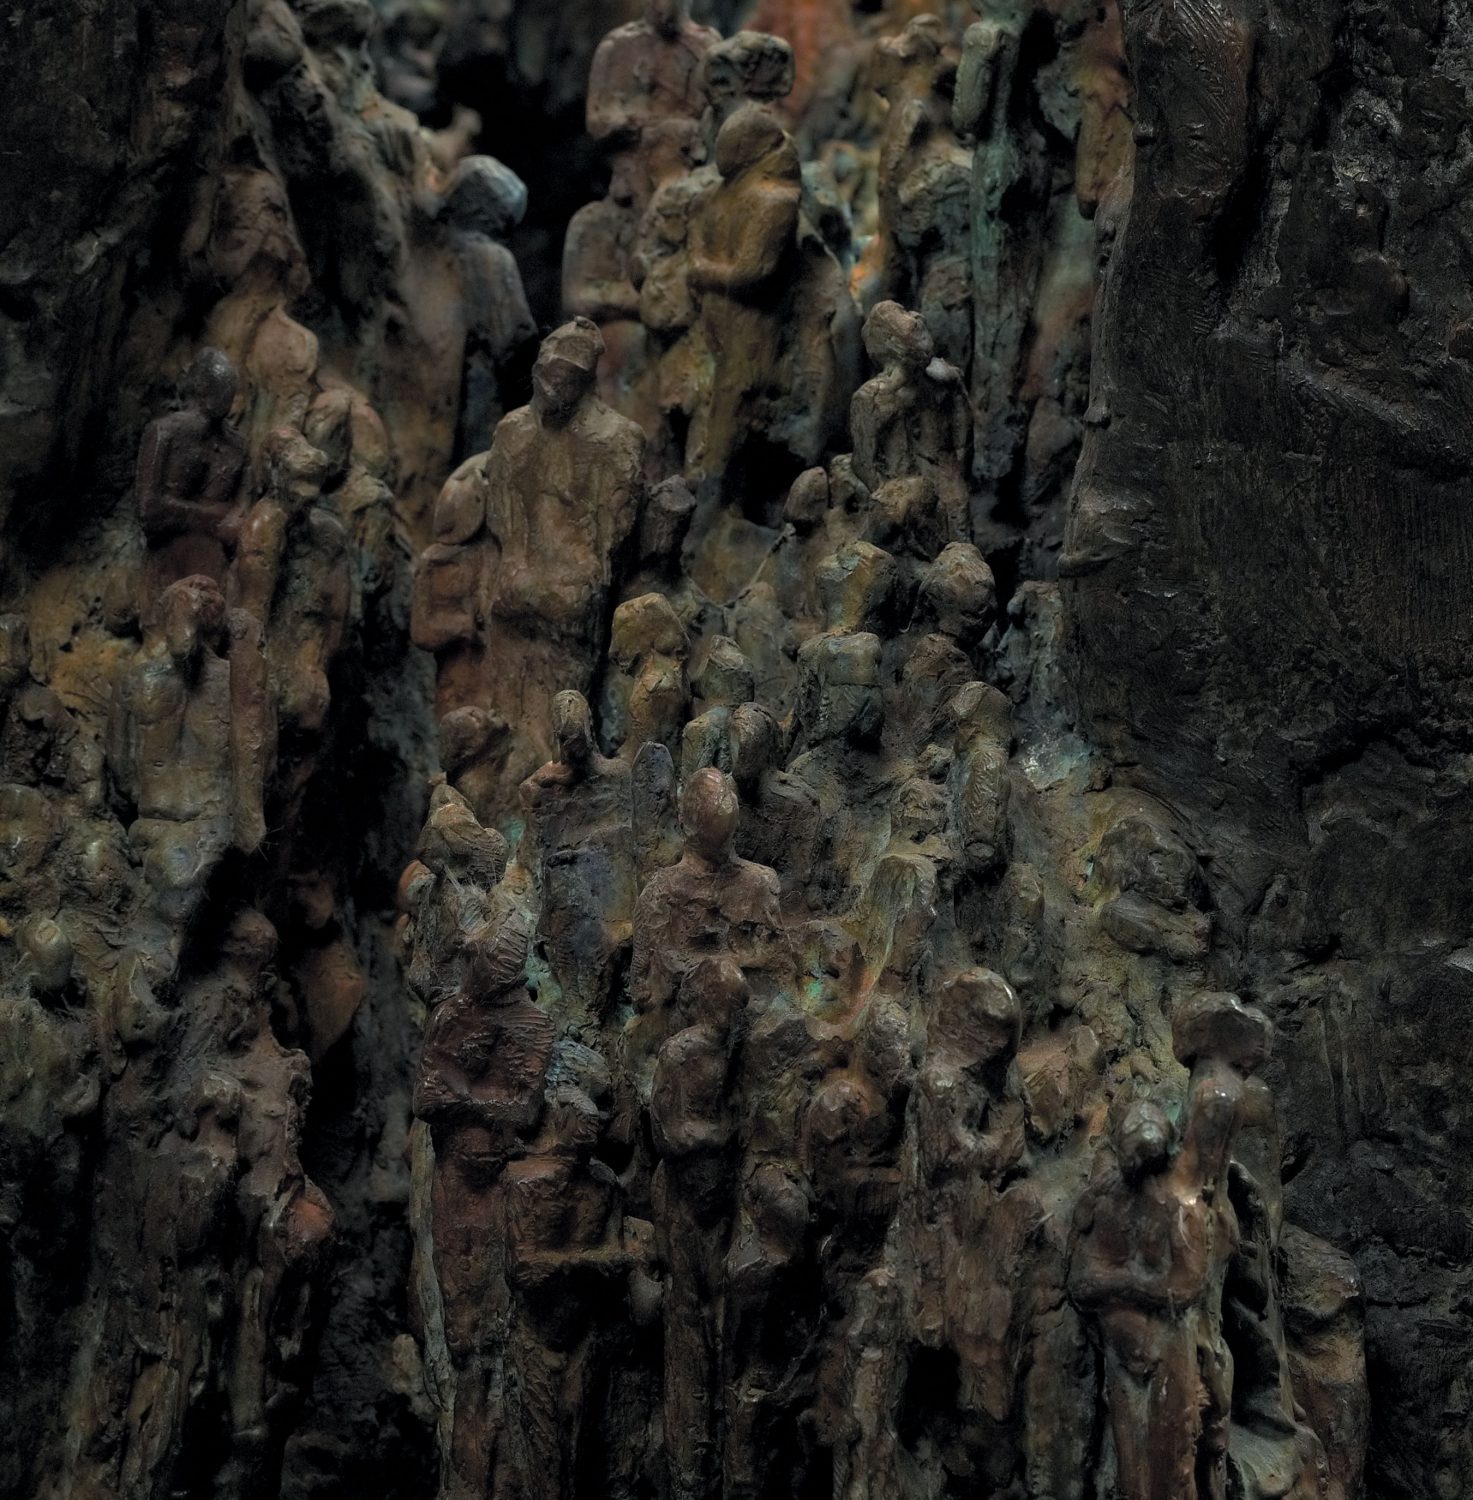 grotte hommes préhistorique bronze sculpture art sortir peuples